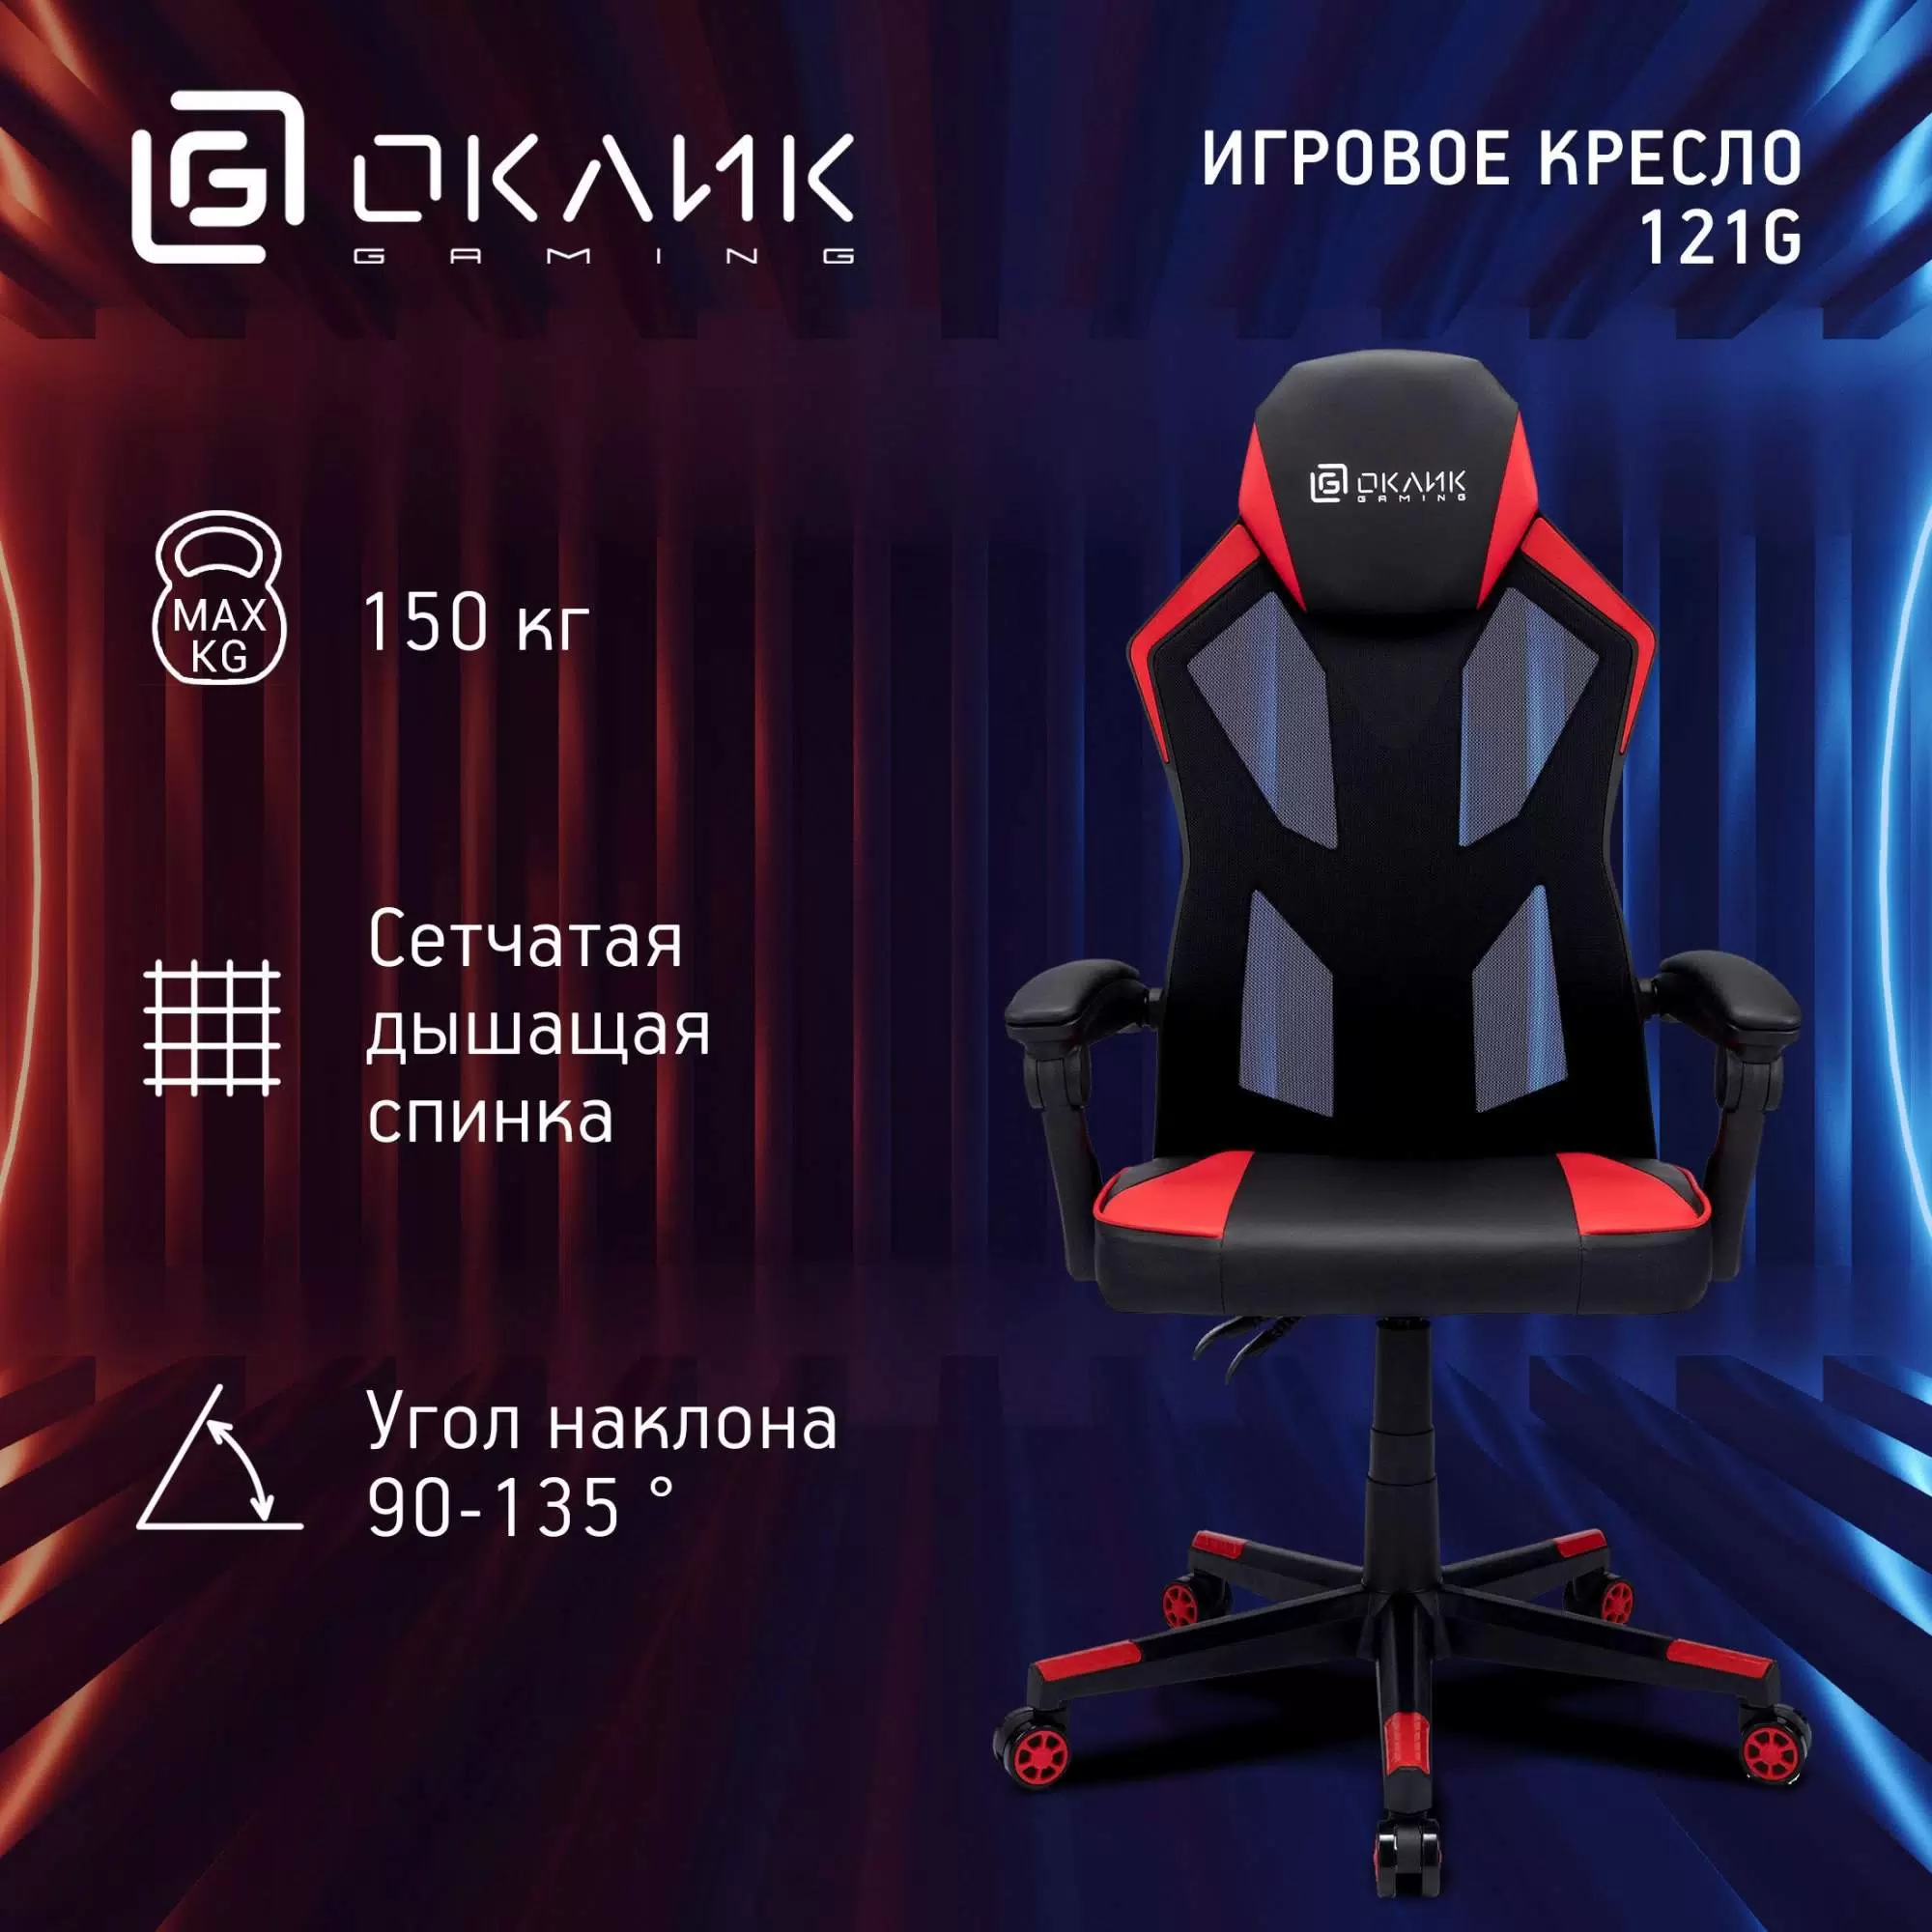 Кресло игровое Оклик -121G - VLARNIKA в Донецке